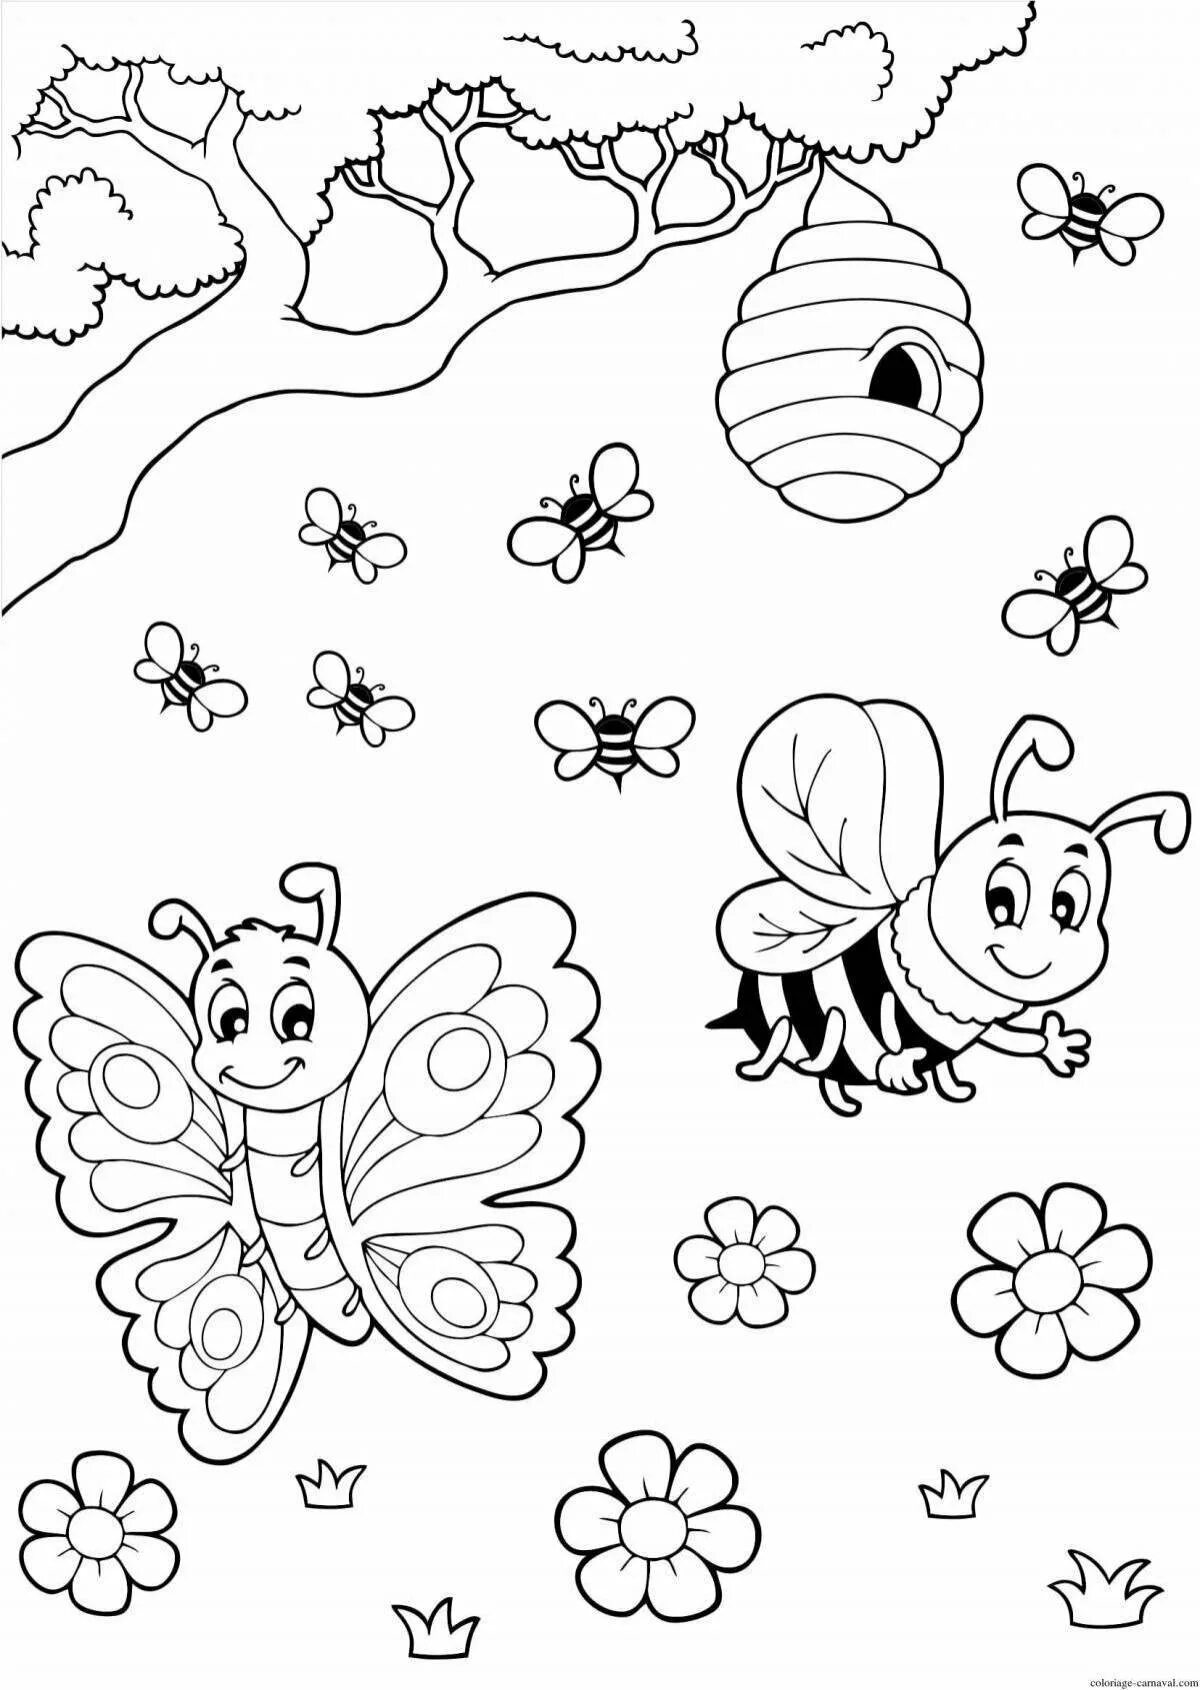 Насекомые раскраска для детей 6 7 лет. Насекомые раскраска для детей. Раскраска насекомые для малышей. Раскраски насекомые для детей 4-5 лет. Раскраска для детей 3 лет насекомые.